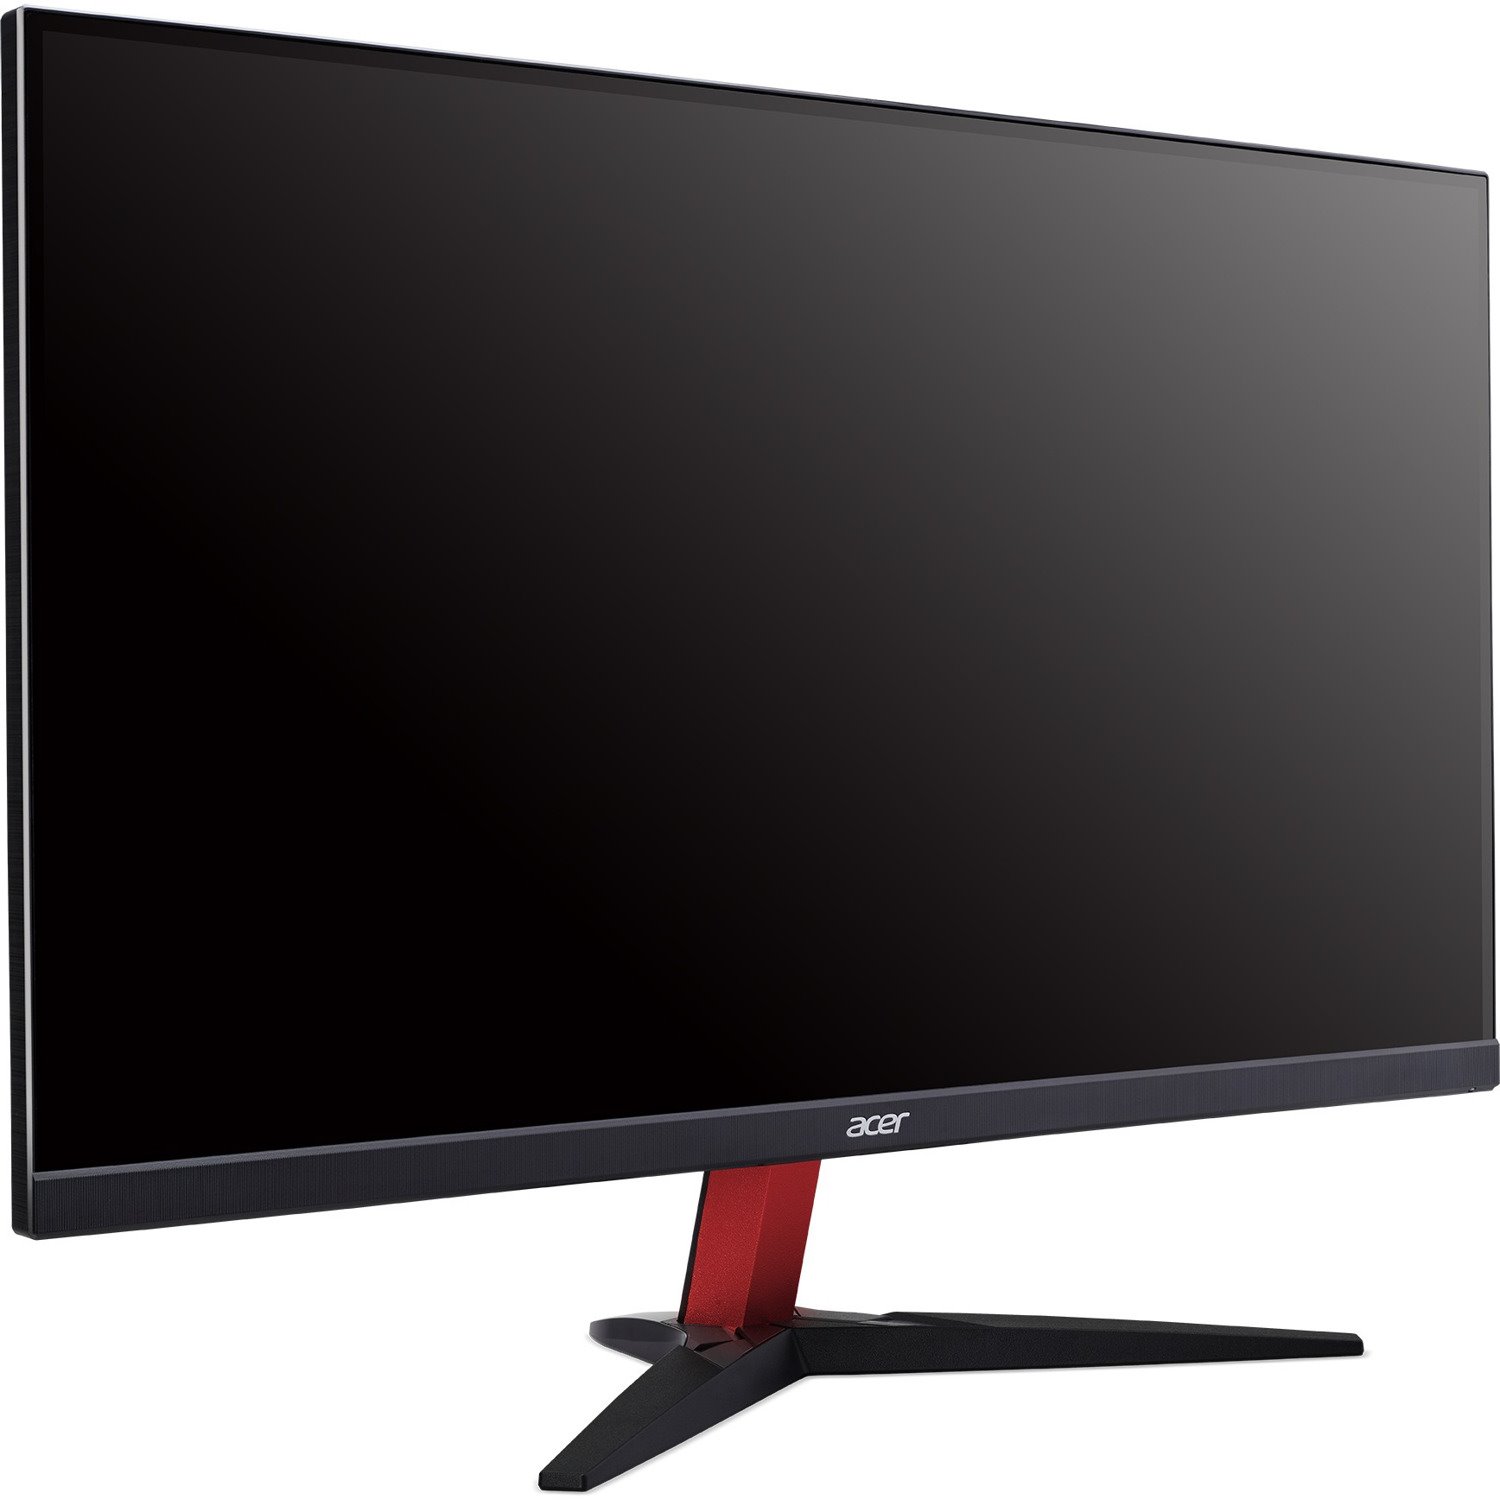 Acer KG272 S 27" Full HD LED LCD Monitor - 16:9 - Black